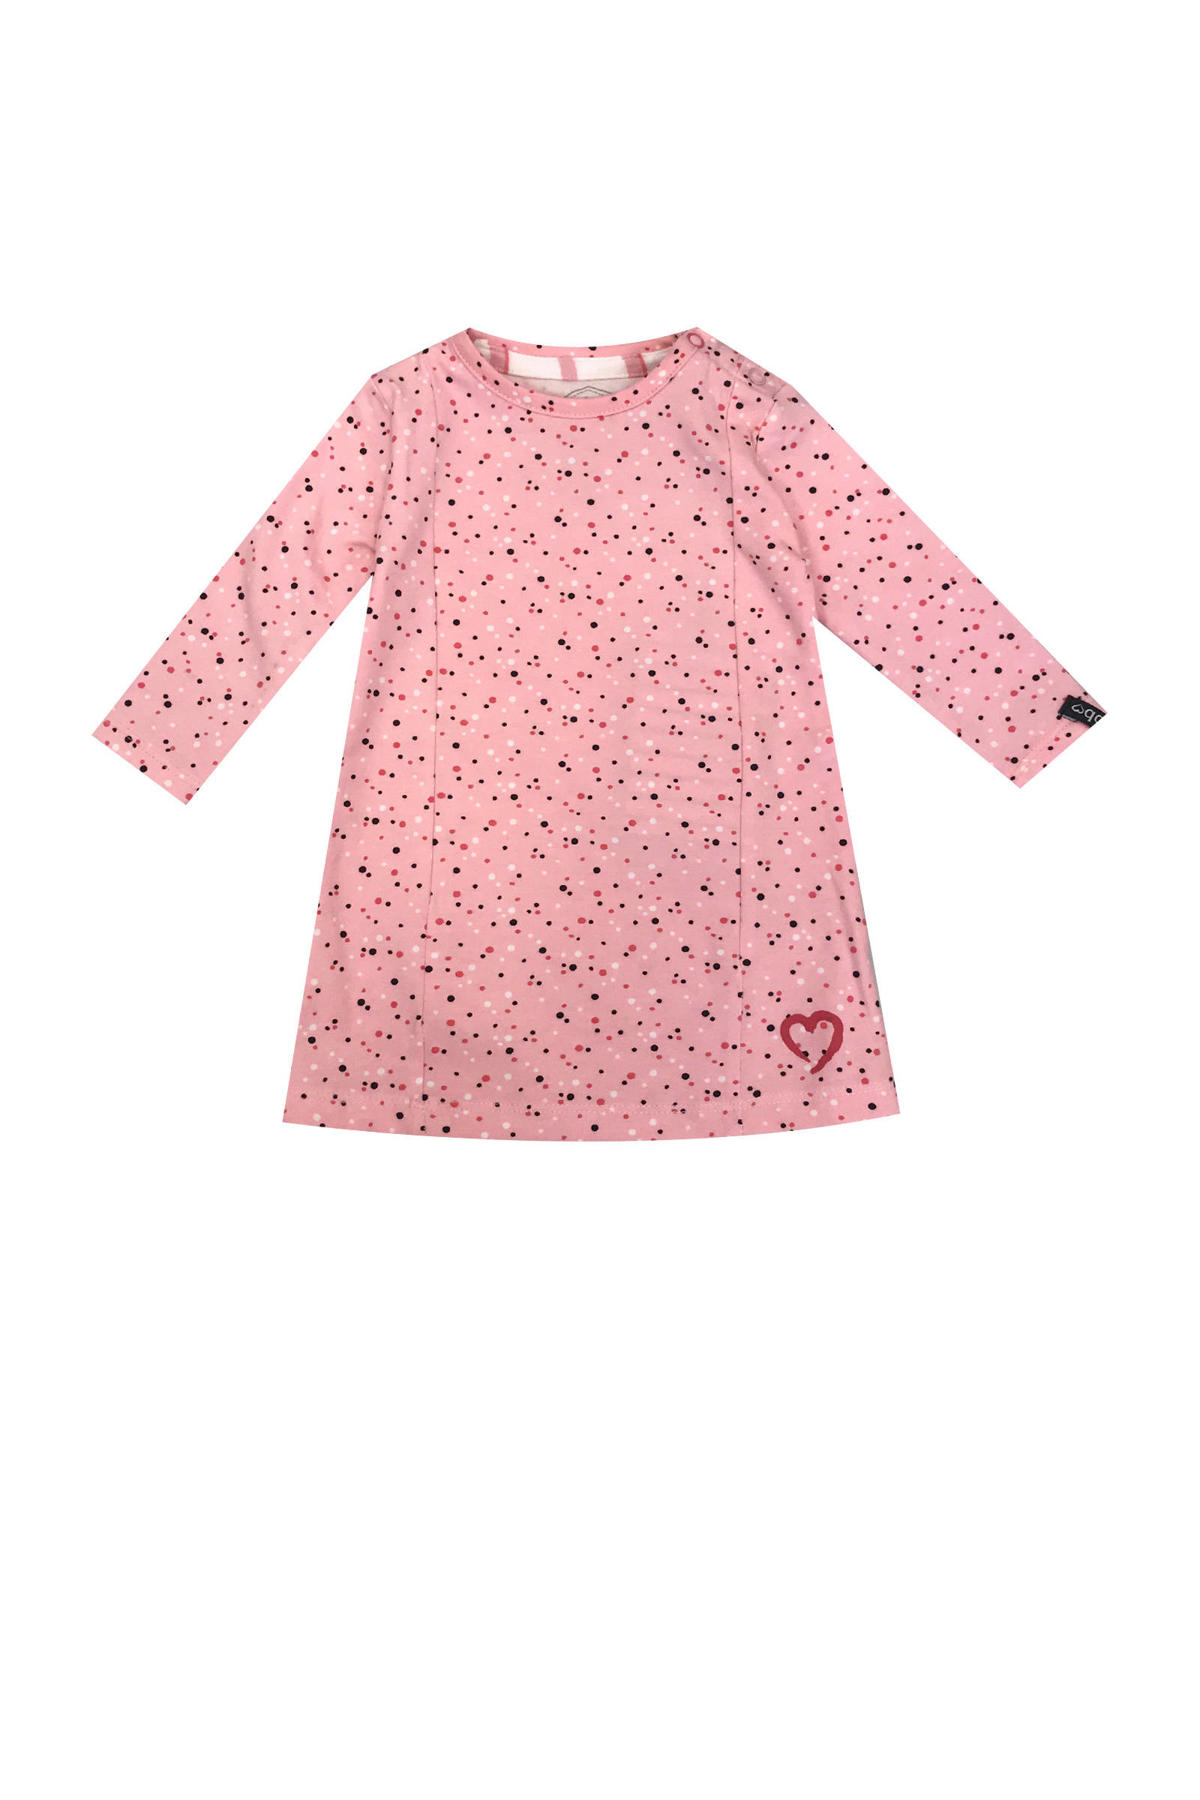 ik wil Ineenstorting Hinder Beebielove newborn baby jurk met stippen roze | wehkamp